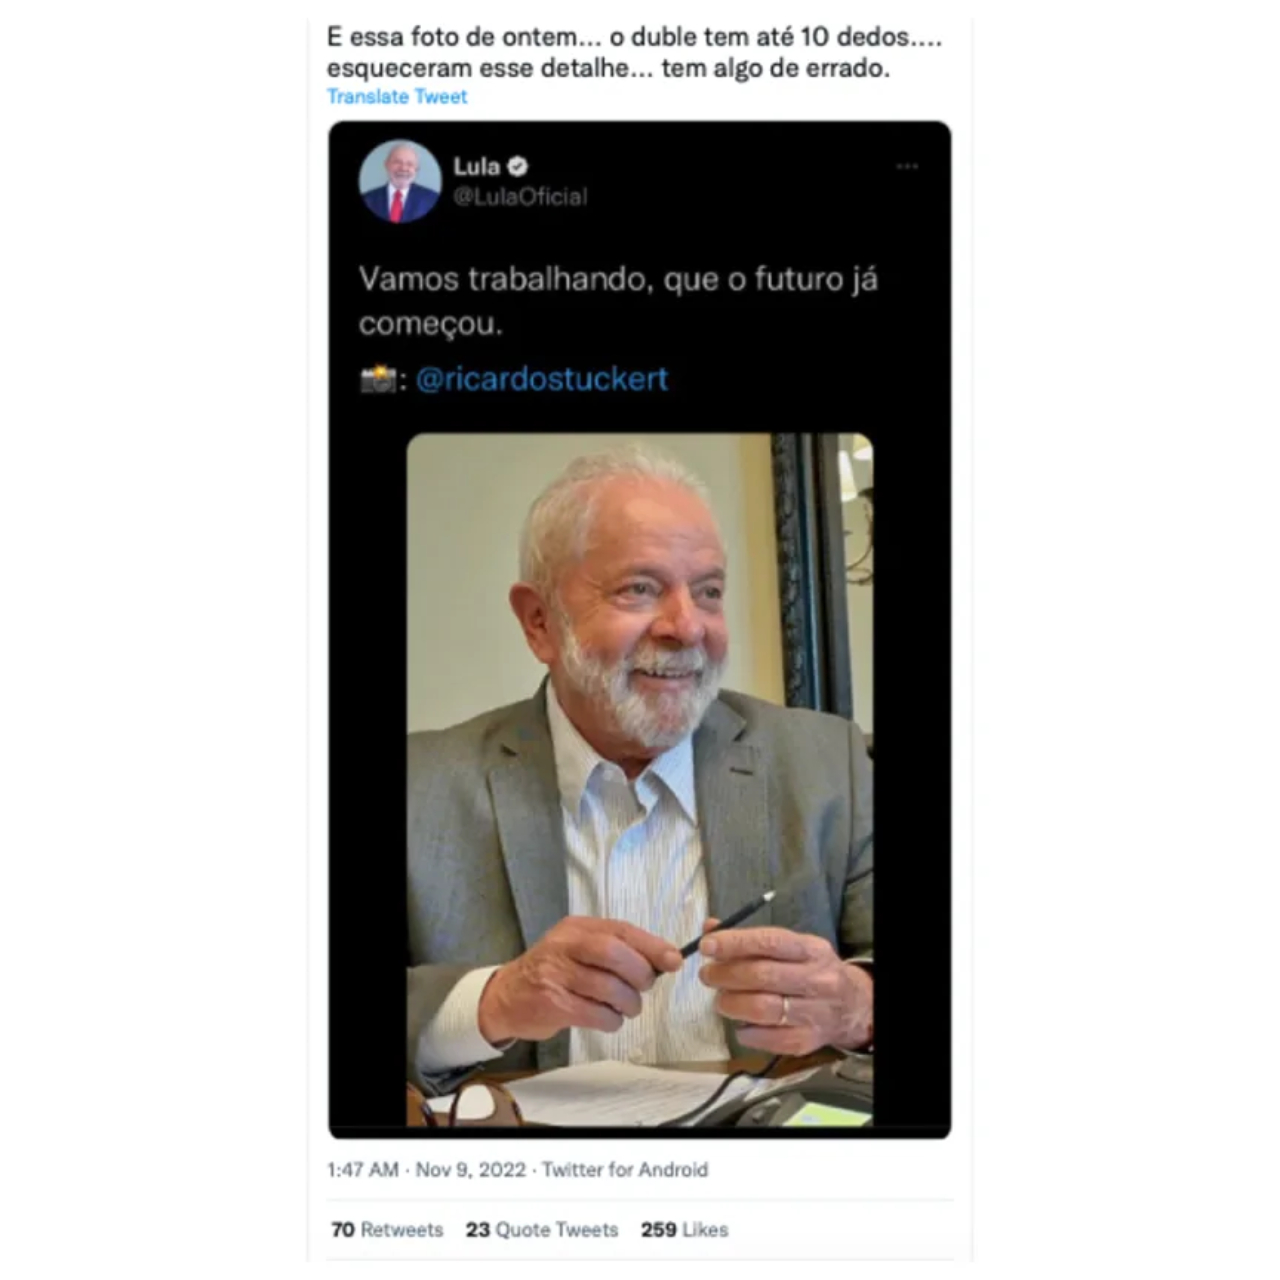 Publicação em que é possível ver foto de Lula com 10 dedos e comentário de internauta sobre possibilidade de ser um dublê